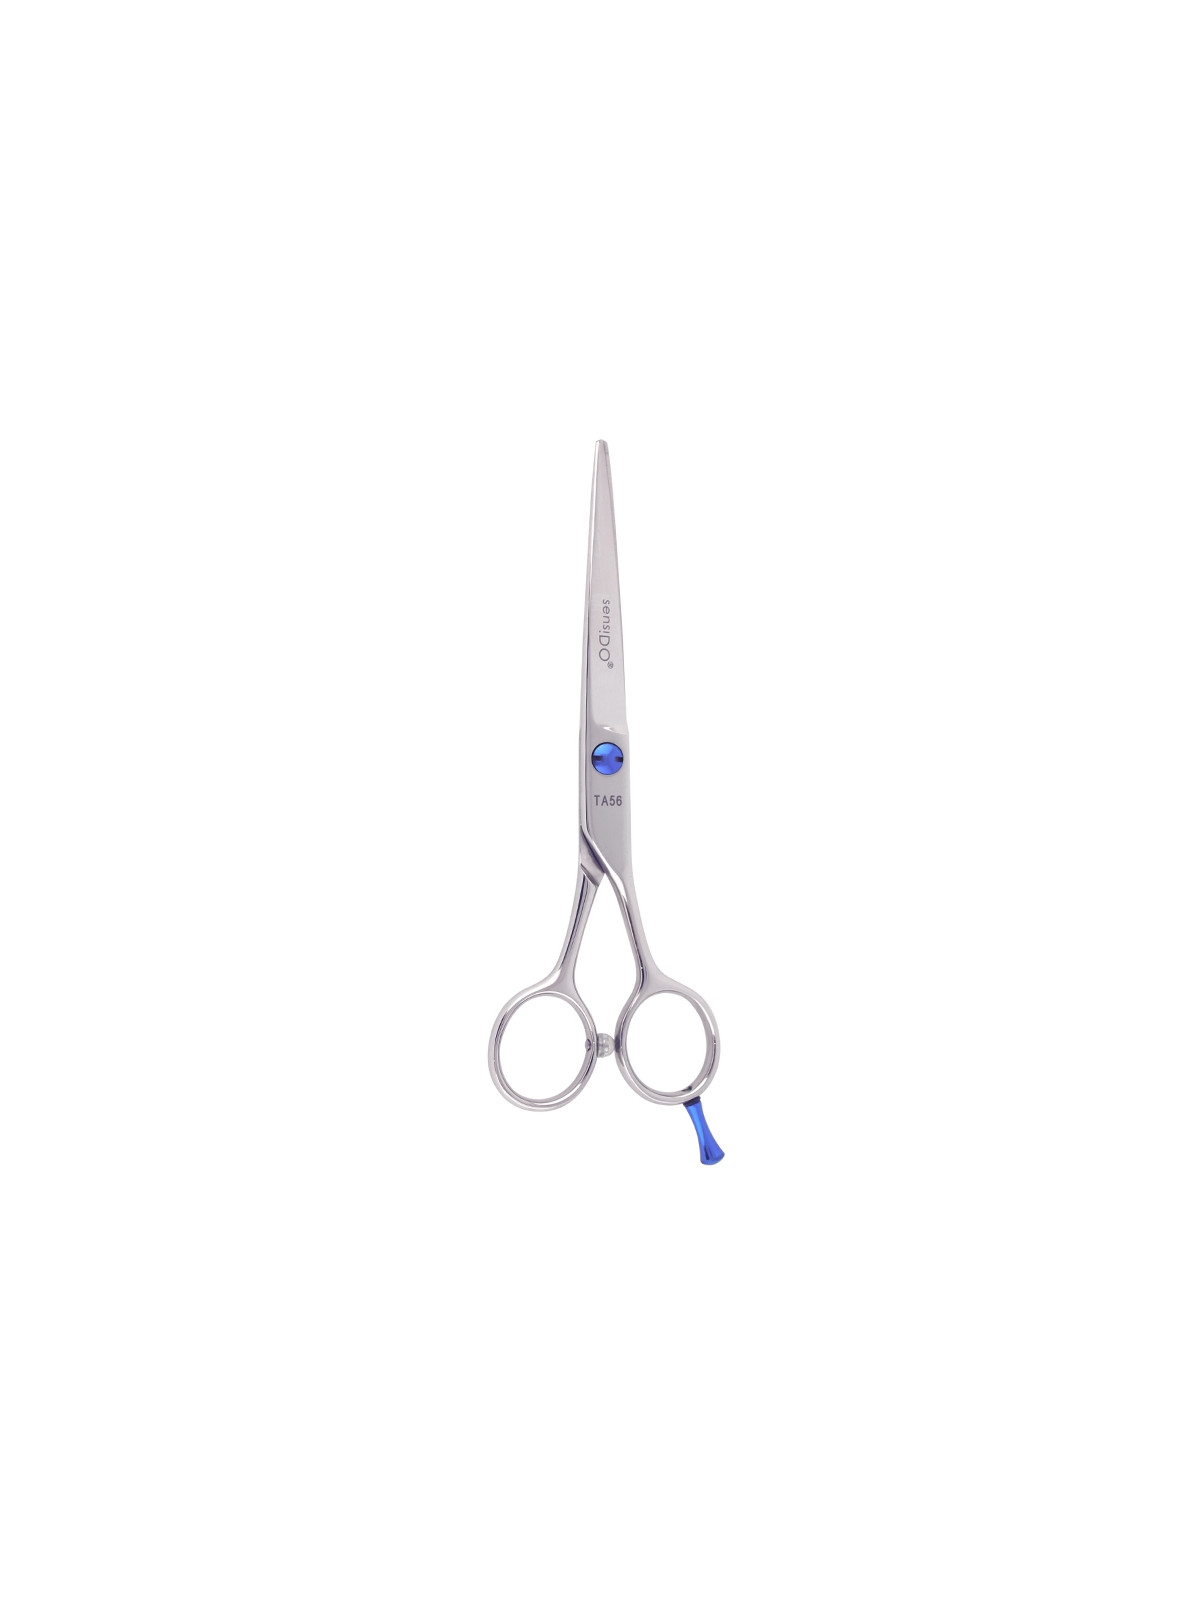 SensiDO TA56 cutting scissors